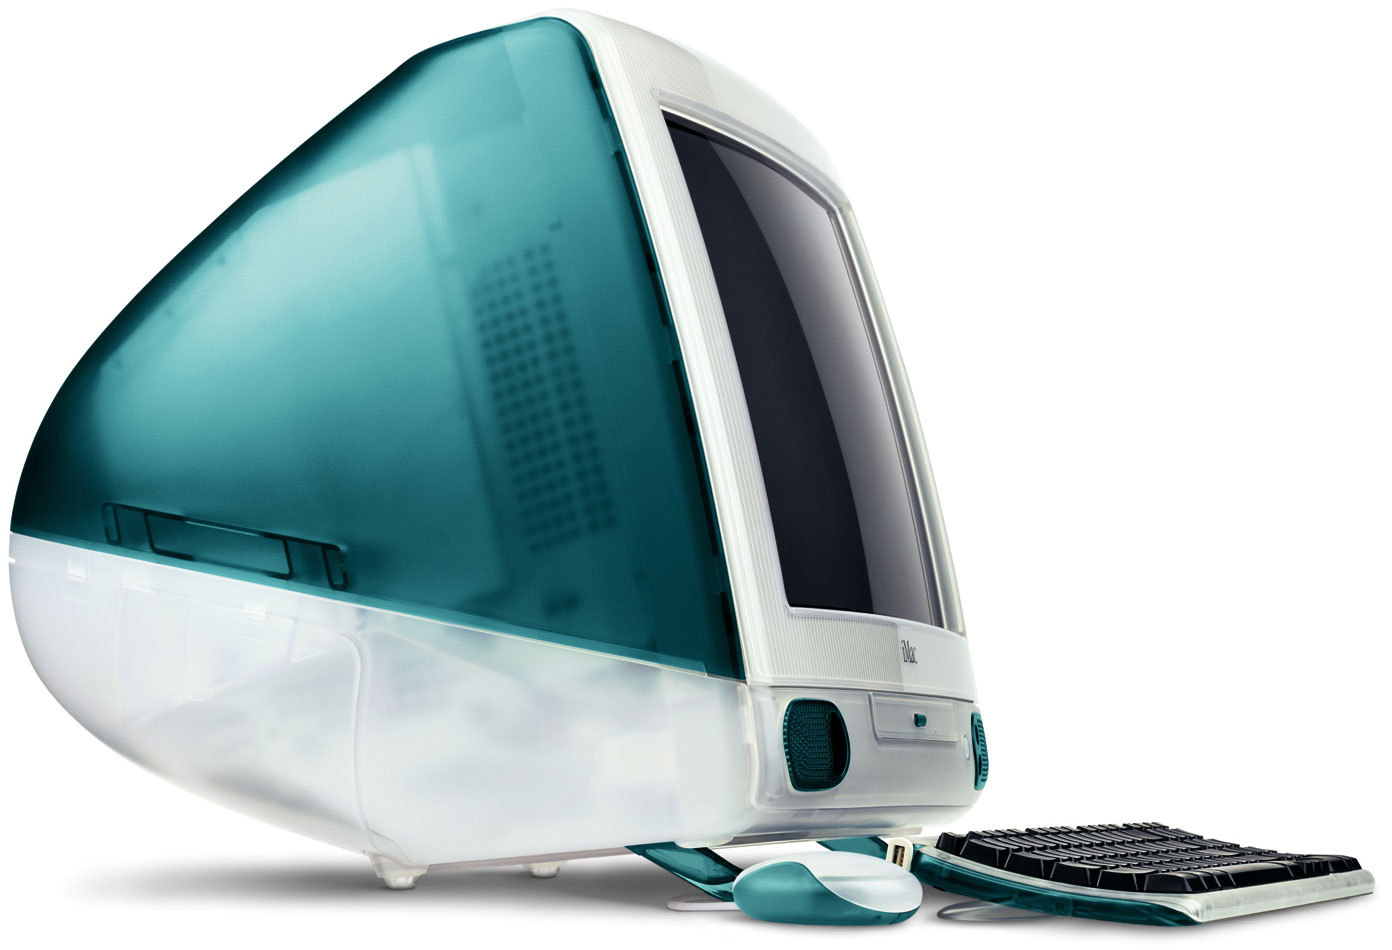 iMac G3 1998